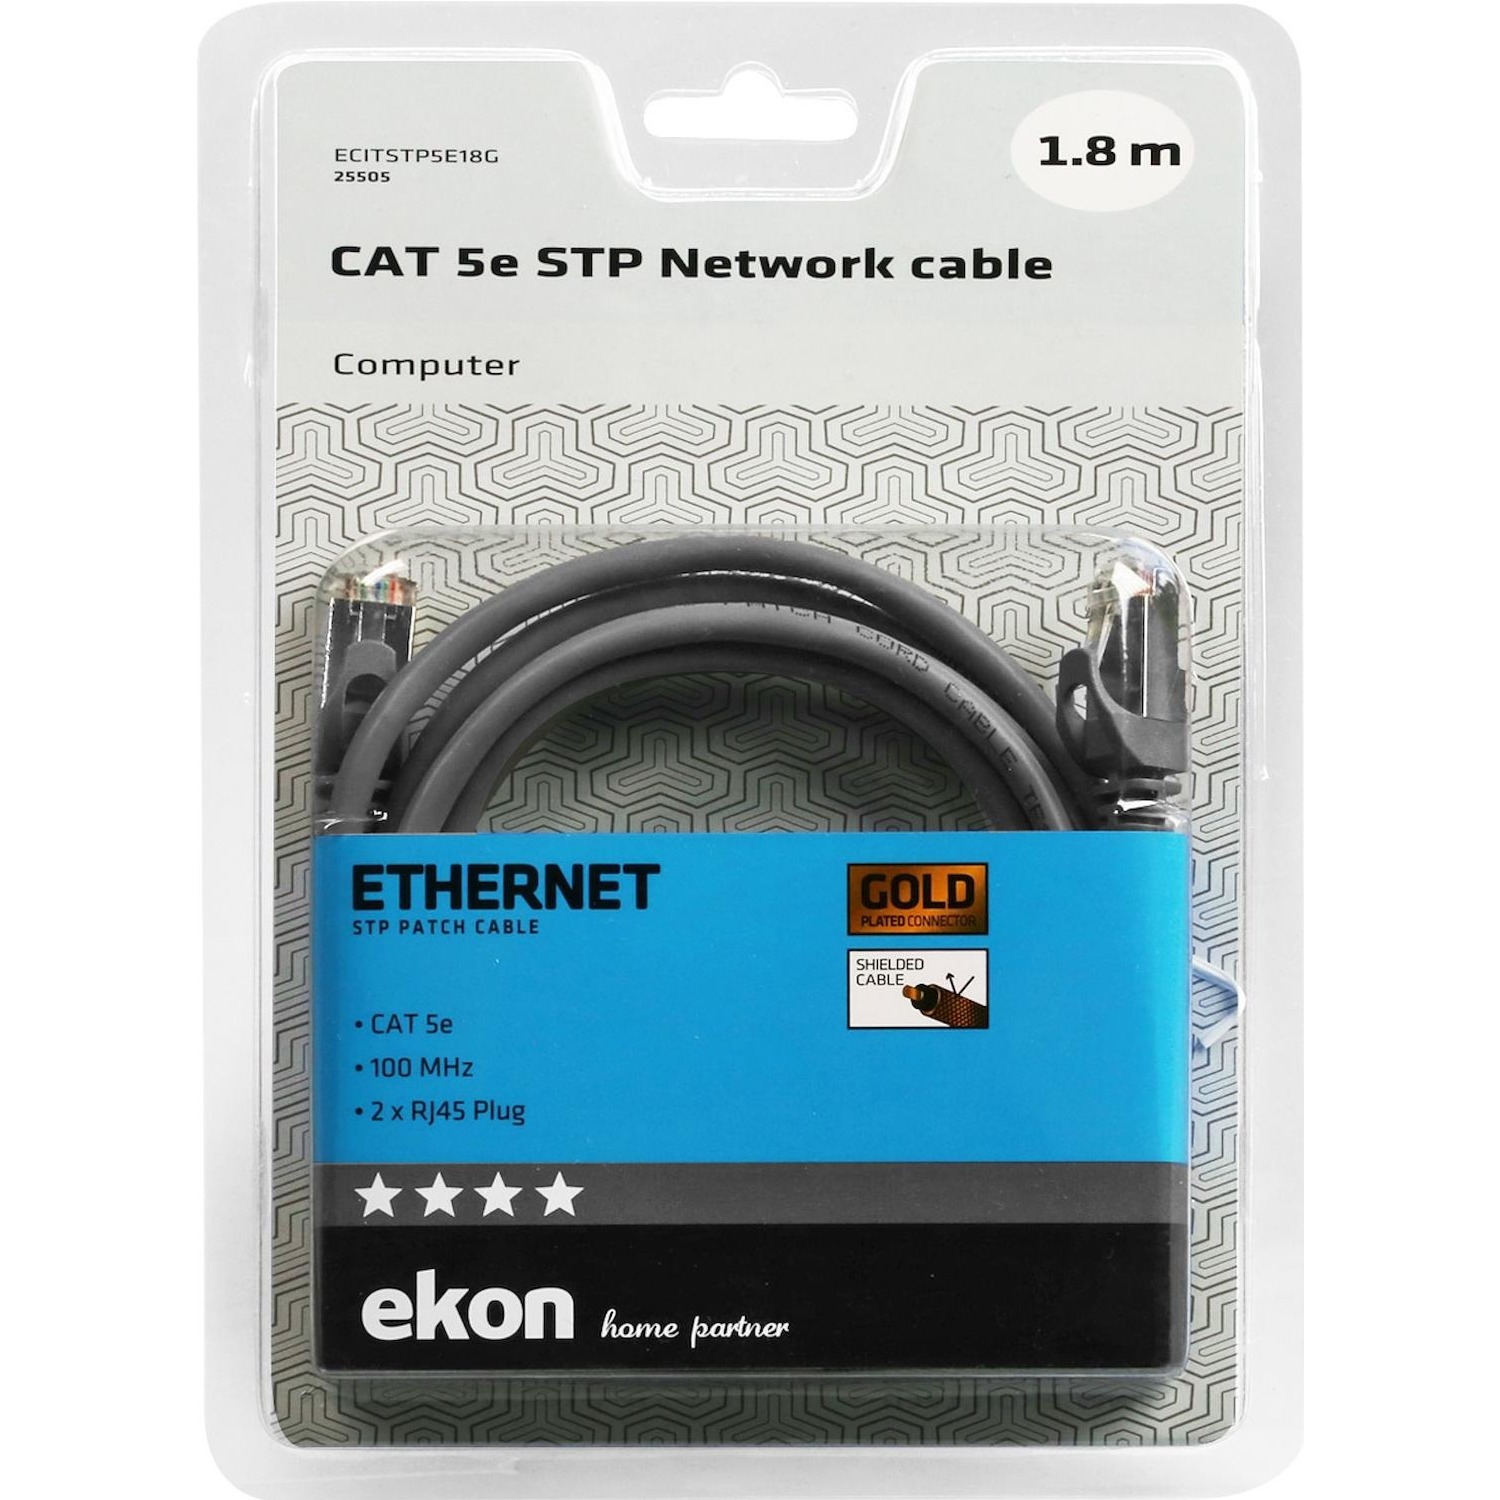 Immagine per Cavo di rete per PC Ekon STP cat 5e colore grigio, connettori RJ45, lunghezza cavo 1 metri da DIMOStore